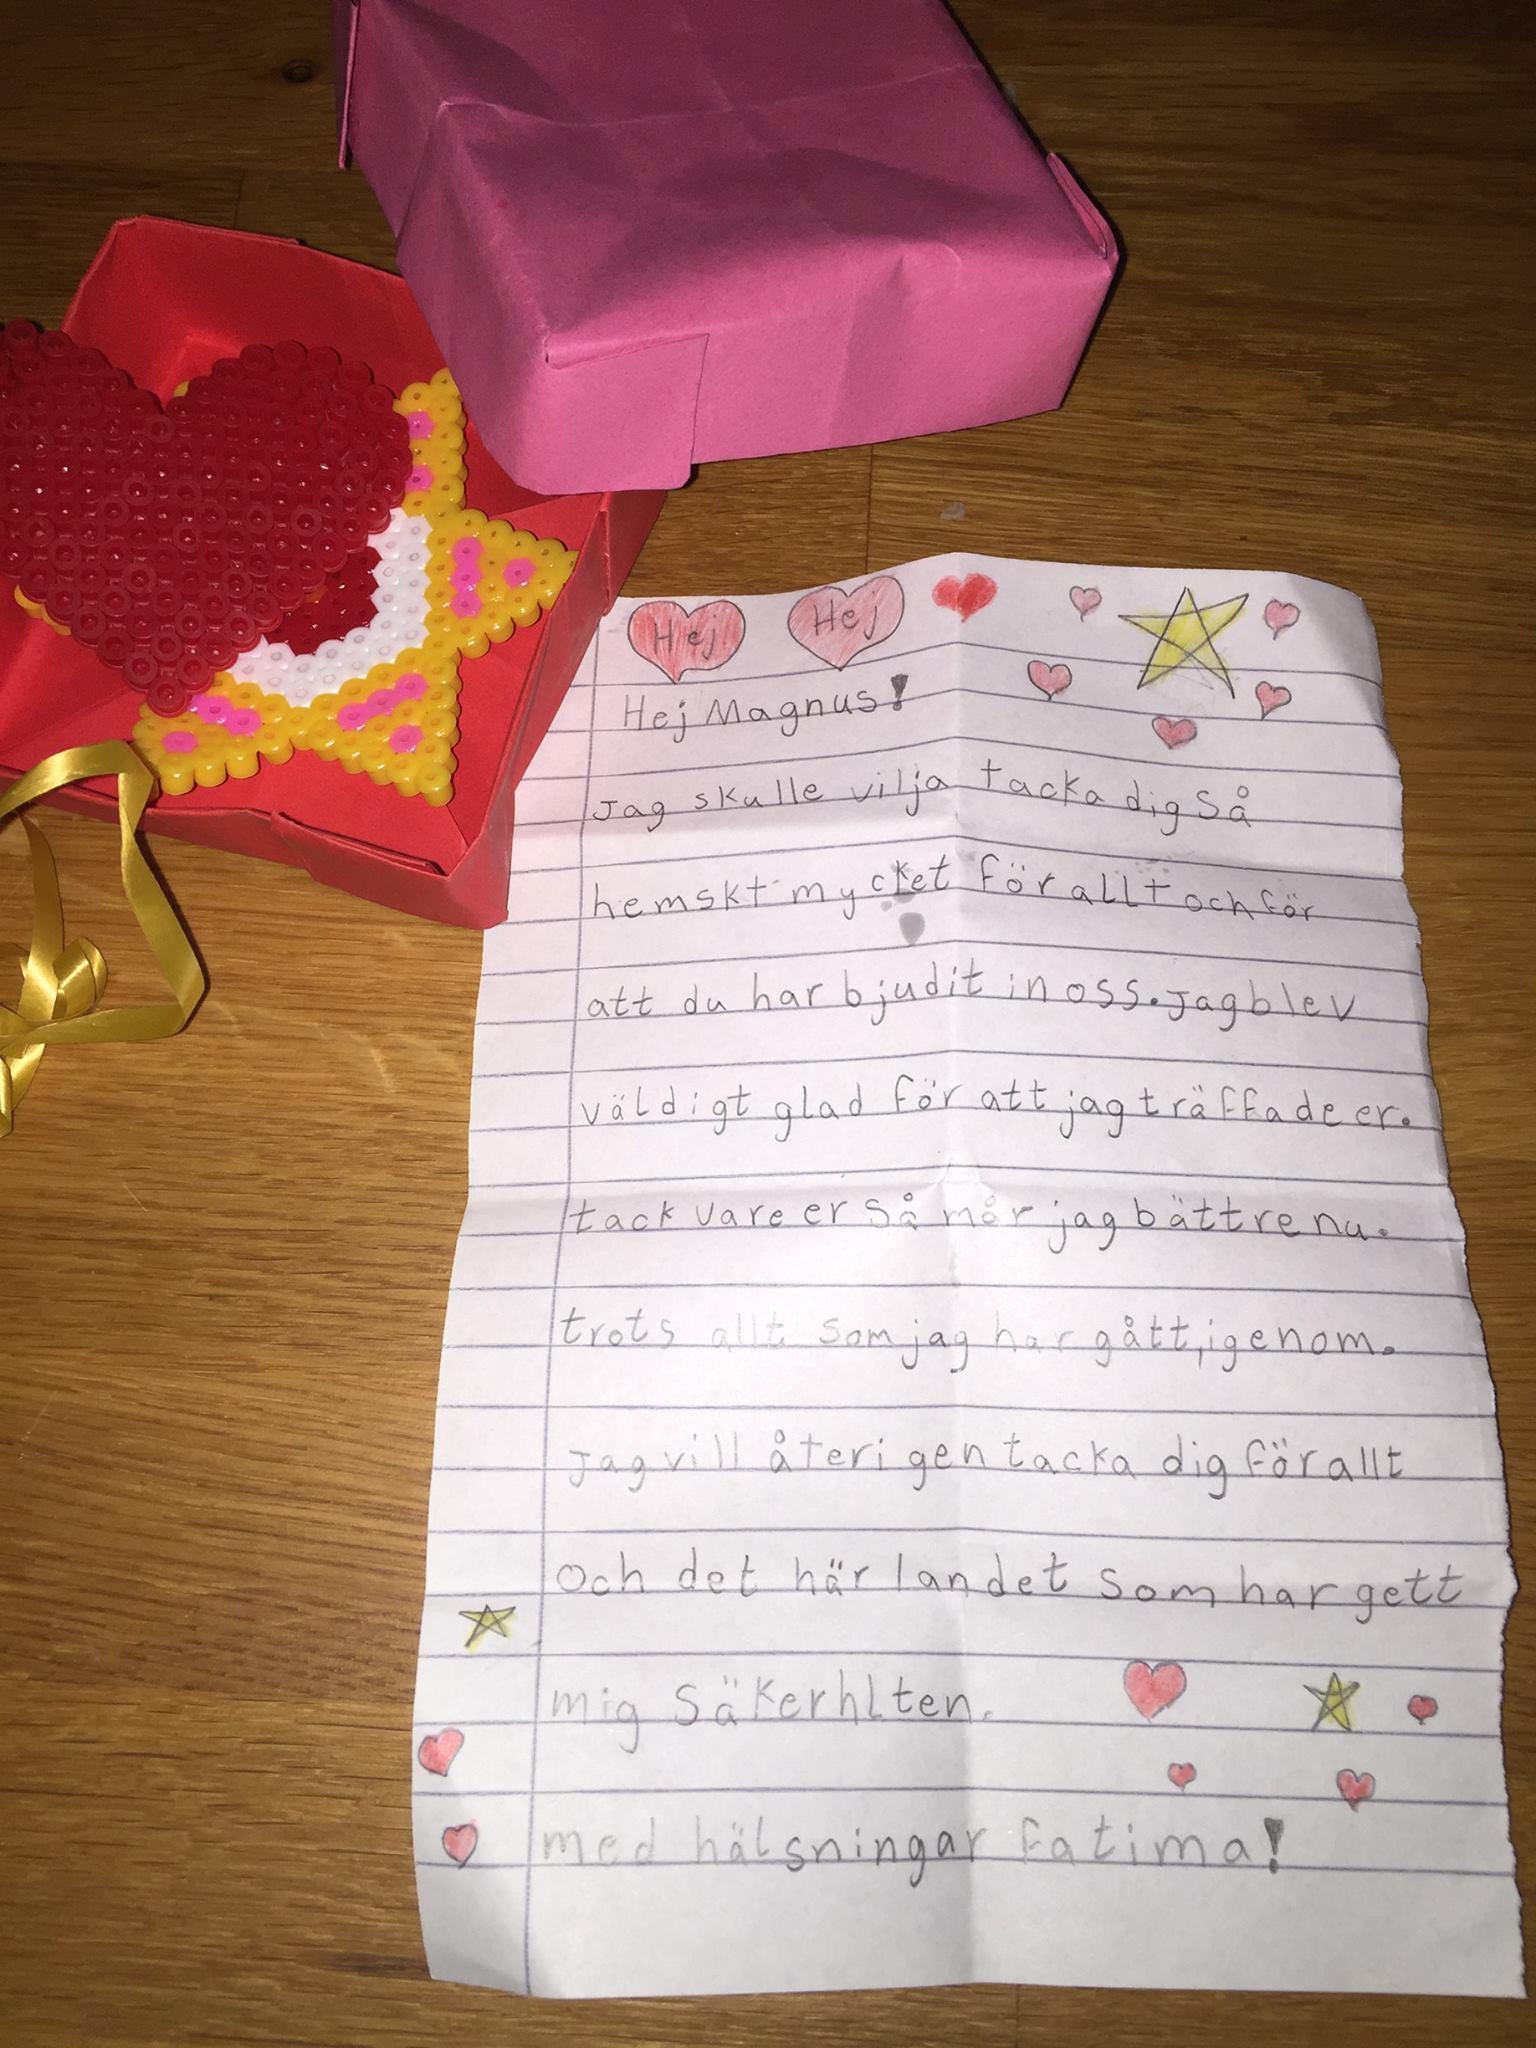 Brevet till Magnus Wennman från nioåriga Fatima.